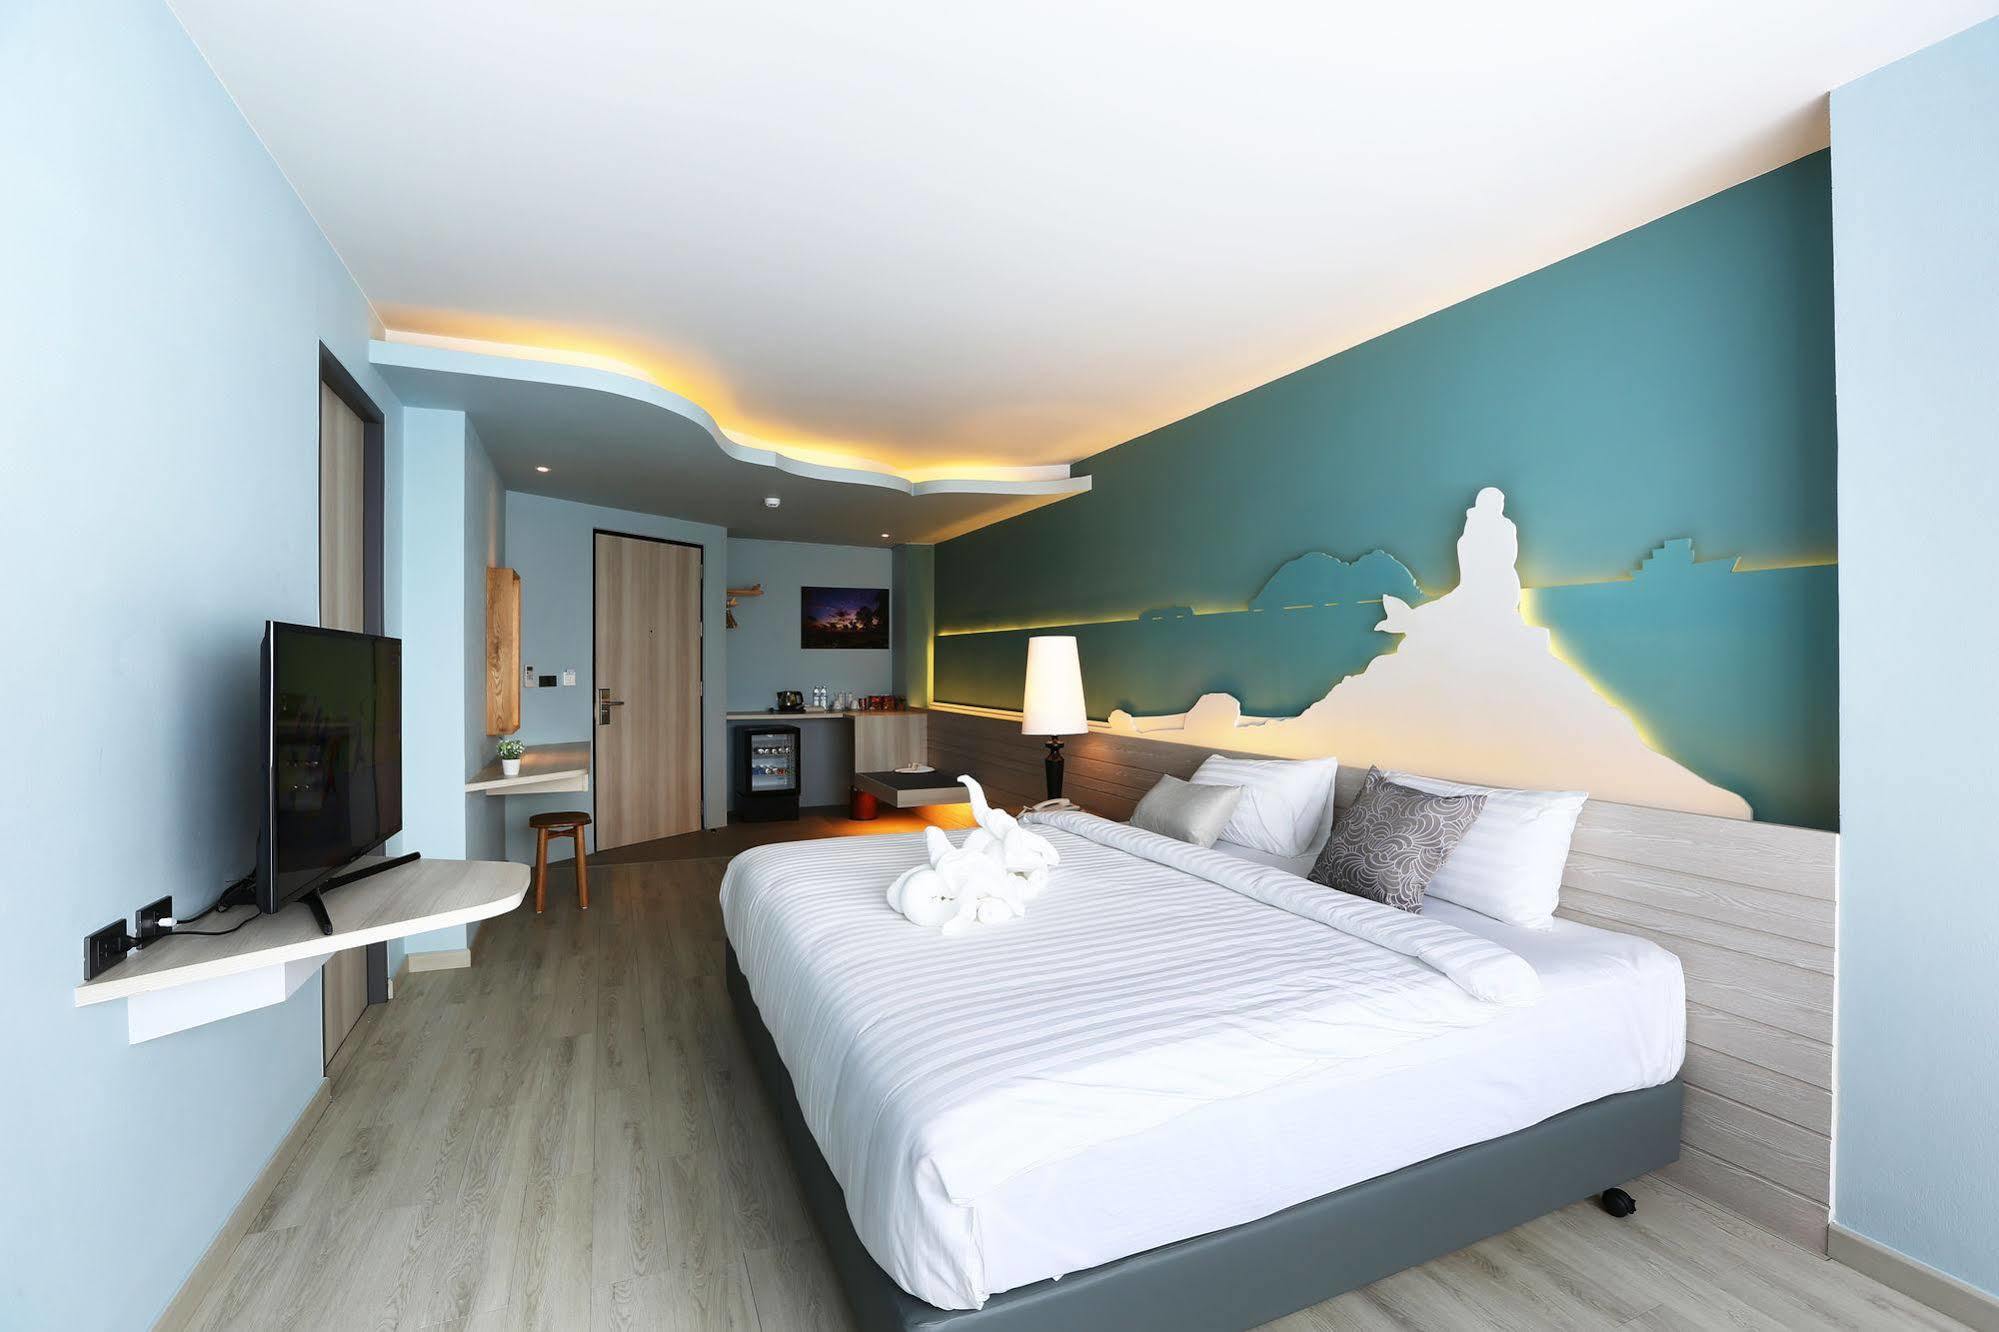 โรงแรม โรงแรมหาดใหญ่ ซิกเนเจอร์ (SHA EXTRA PLUS) หาดใหญ่ 3* (ไทย) - จาก 775  THB | HOTELMIX